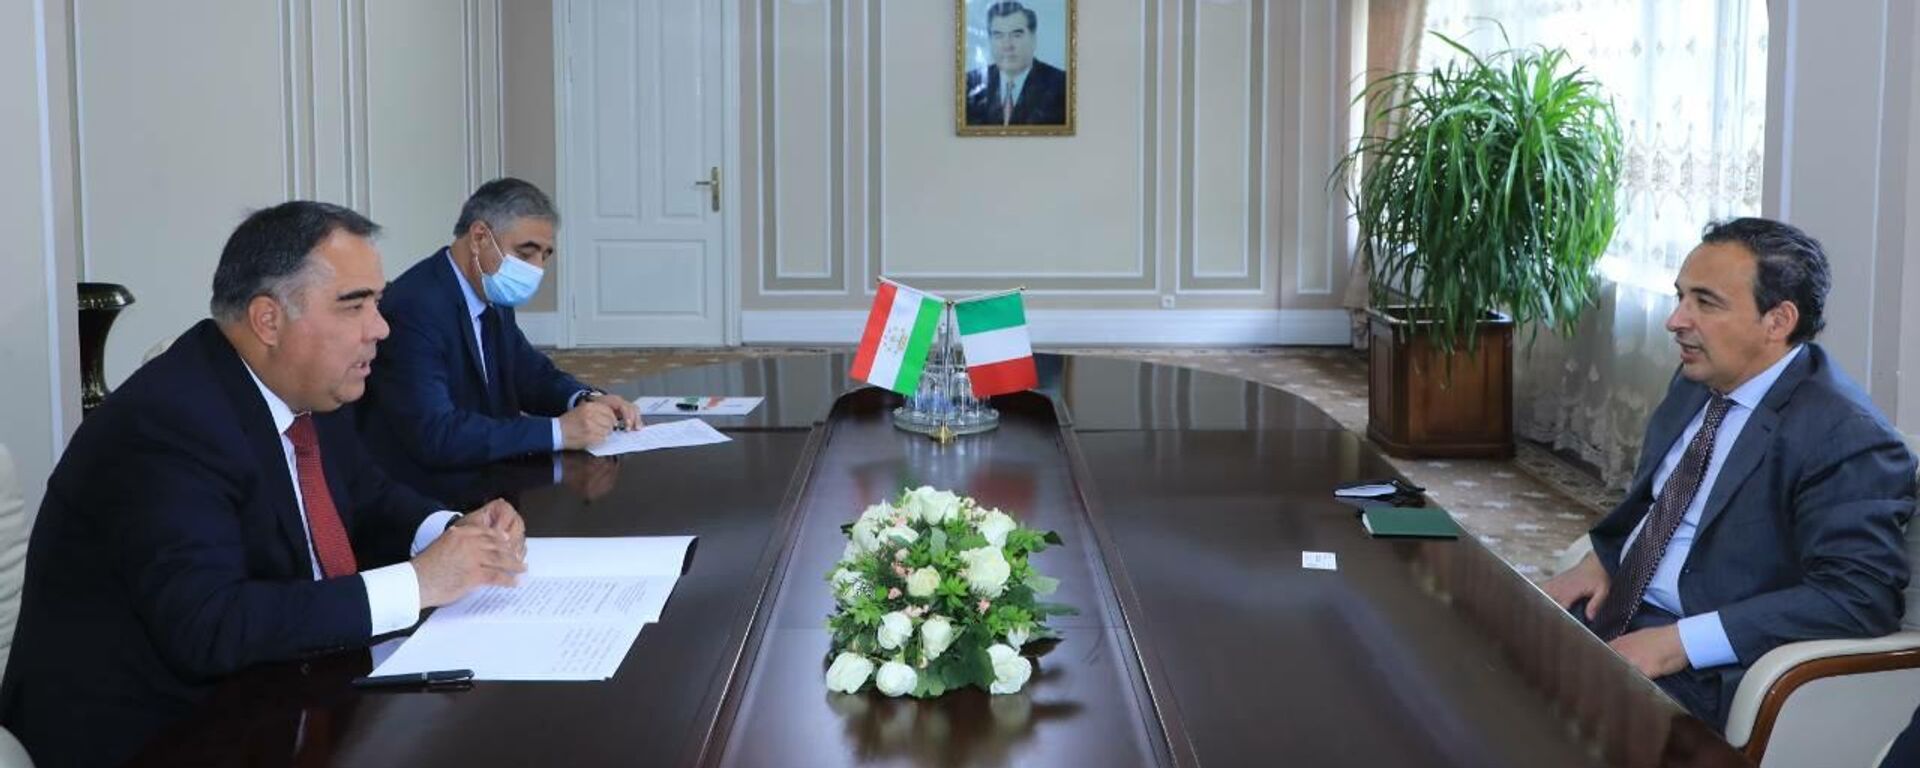 Ахмадзода встретился с послом Италии в Таджикистнане - Sputnik Тоҷикистон, 1920, 20.05.2021